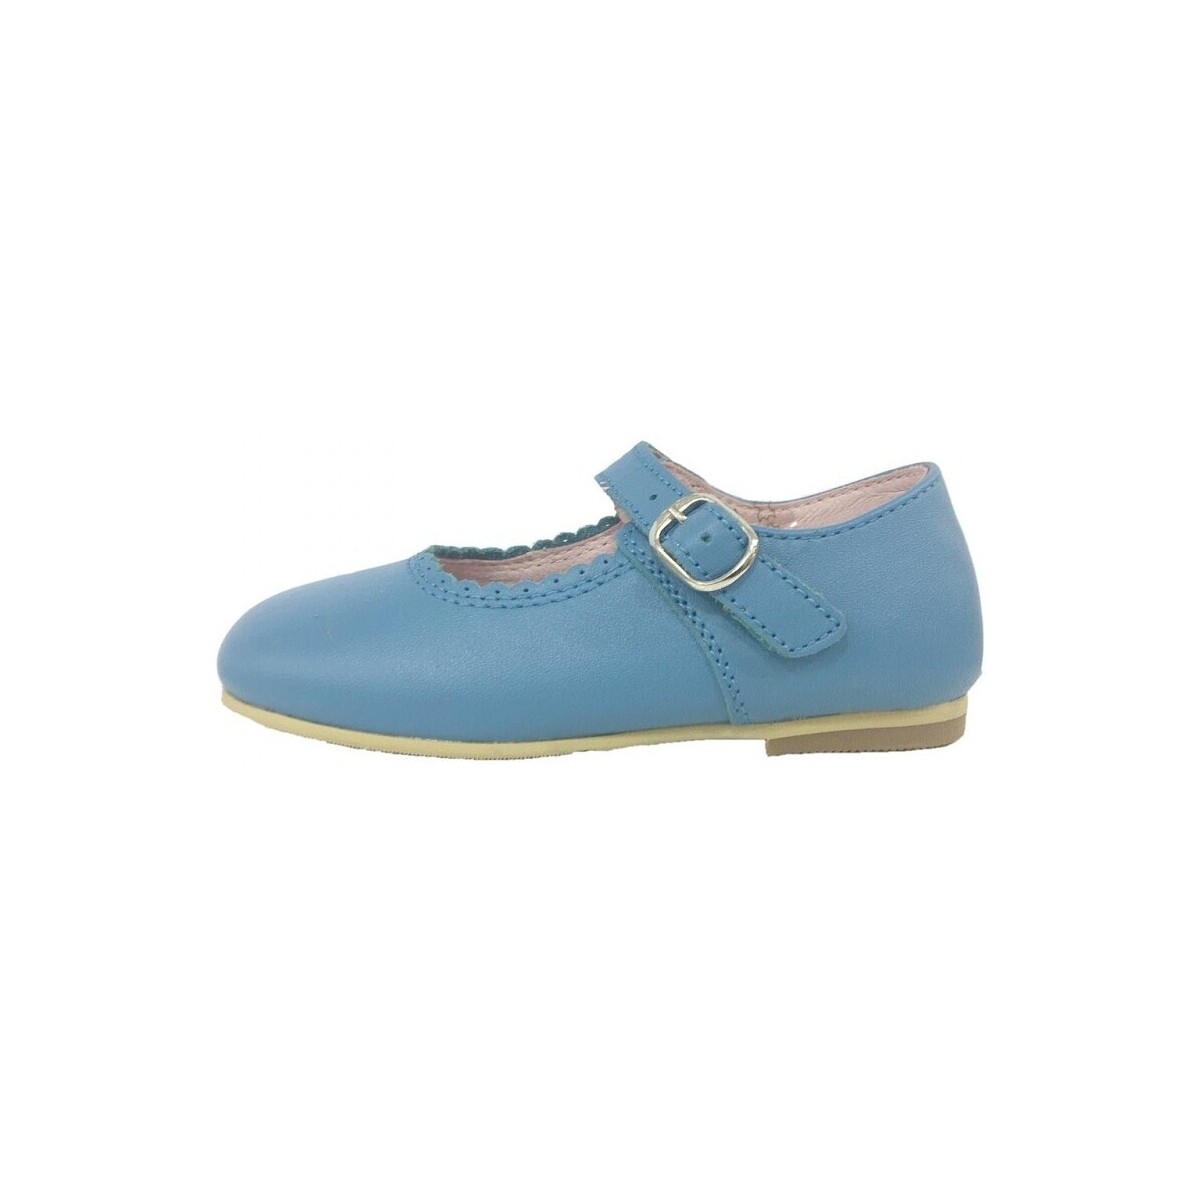 Παπούτσια Κορίτσι Μπαλαρίνες Colores 20880-18 Μπλέ